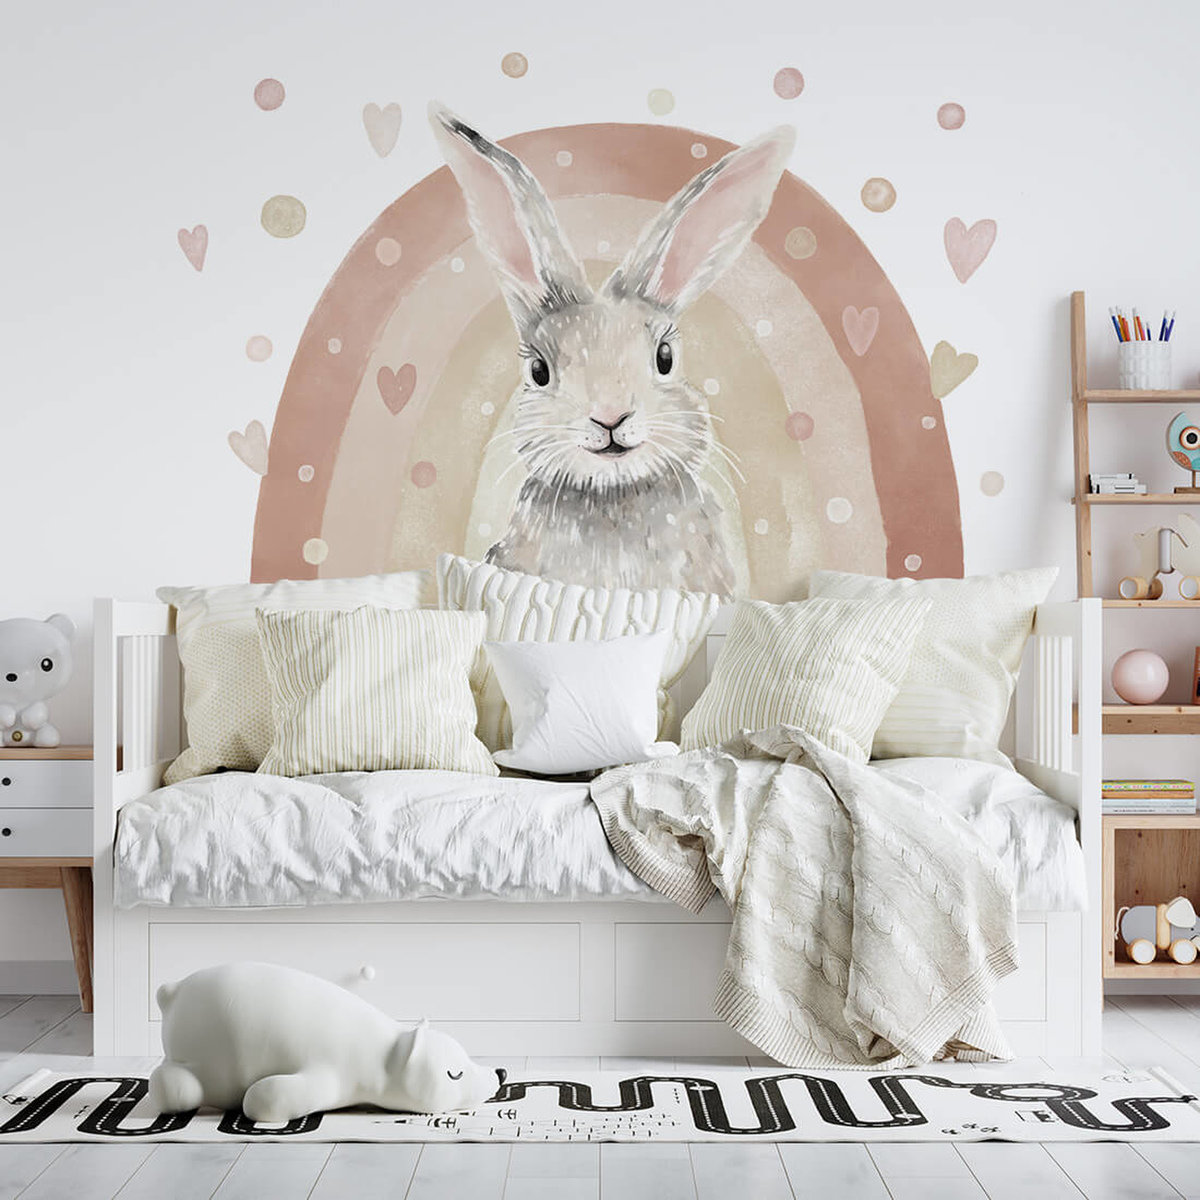 Sticker mural enfant la maison du lapin